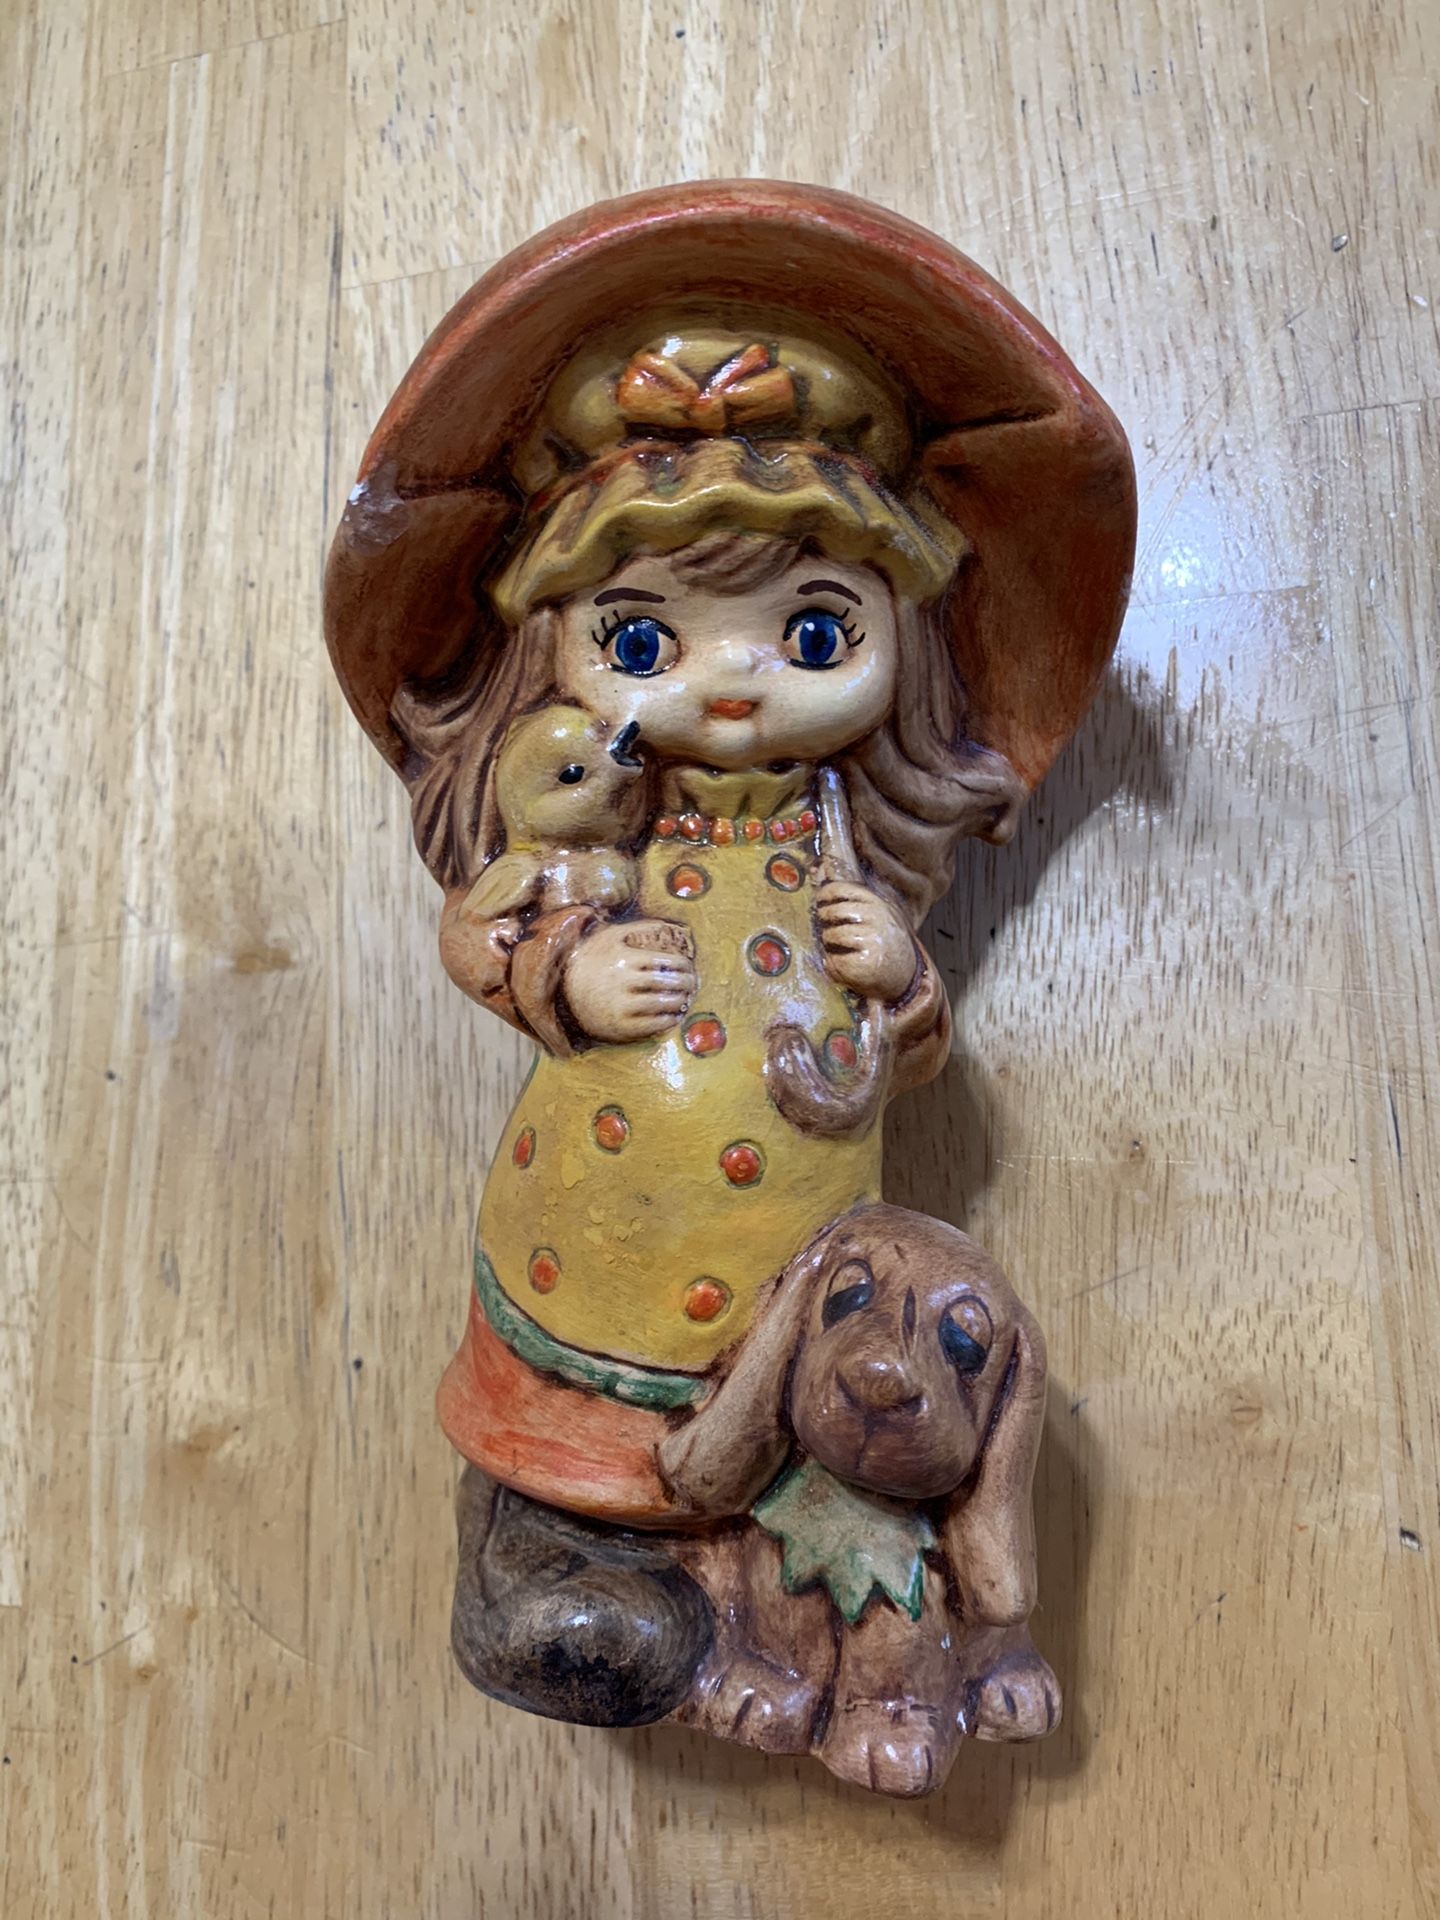 Antique Ceramic Doll